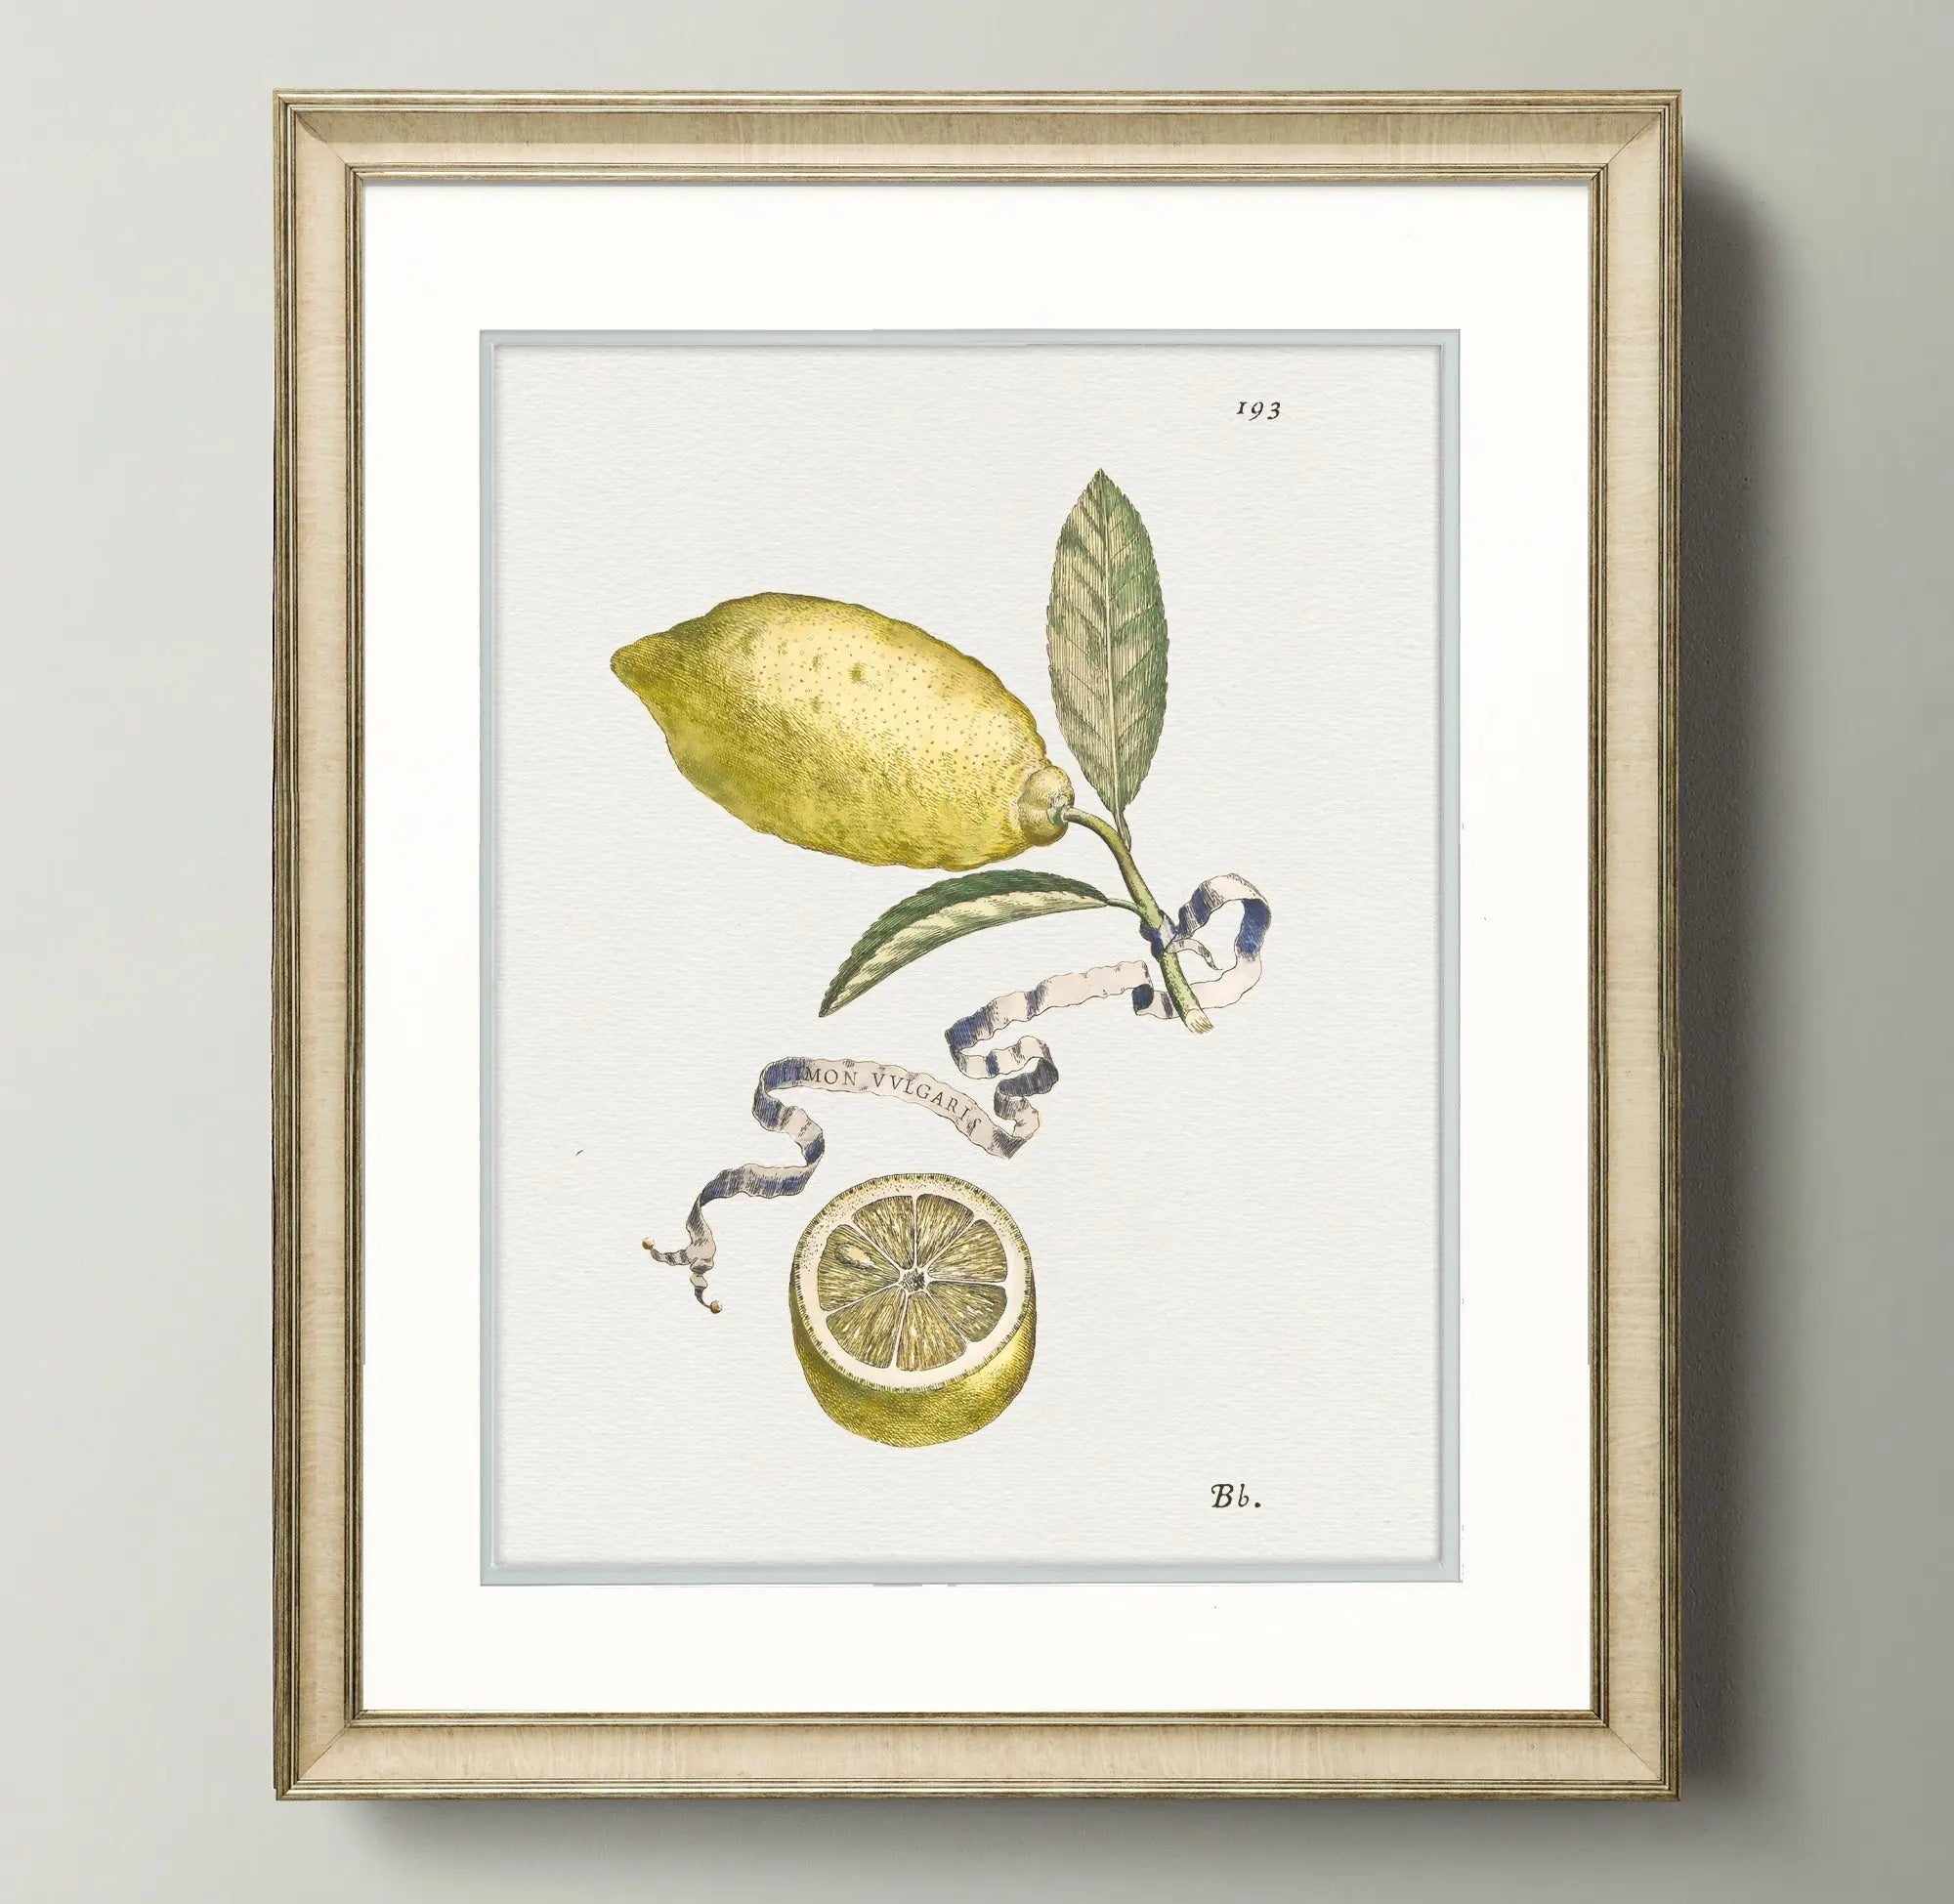 Citrus Botanicals - Lemon - Plate 193